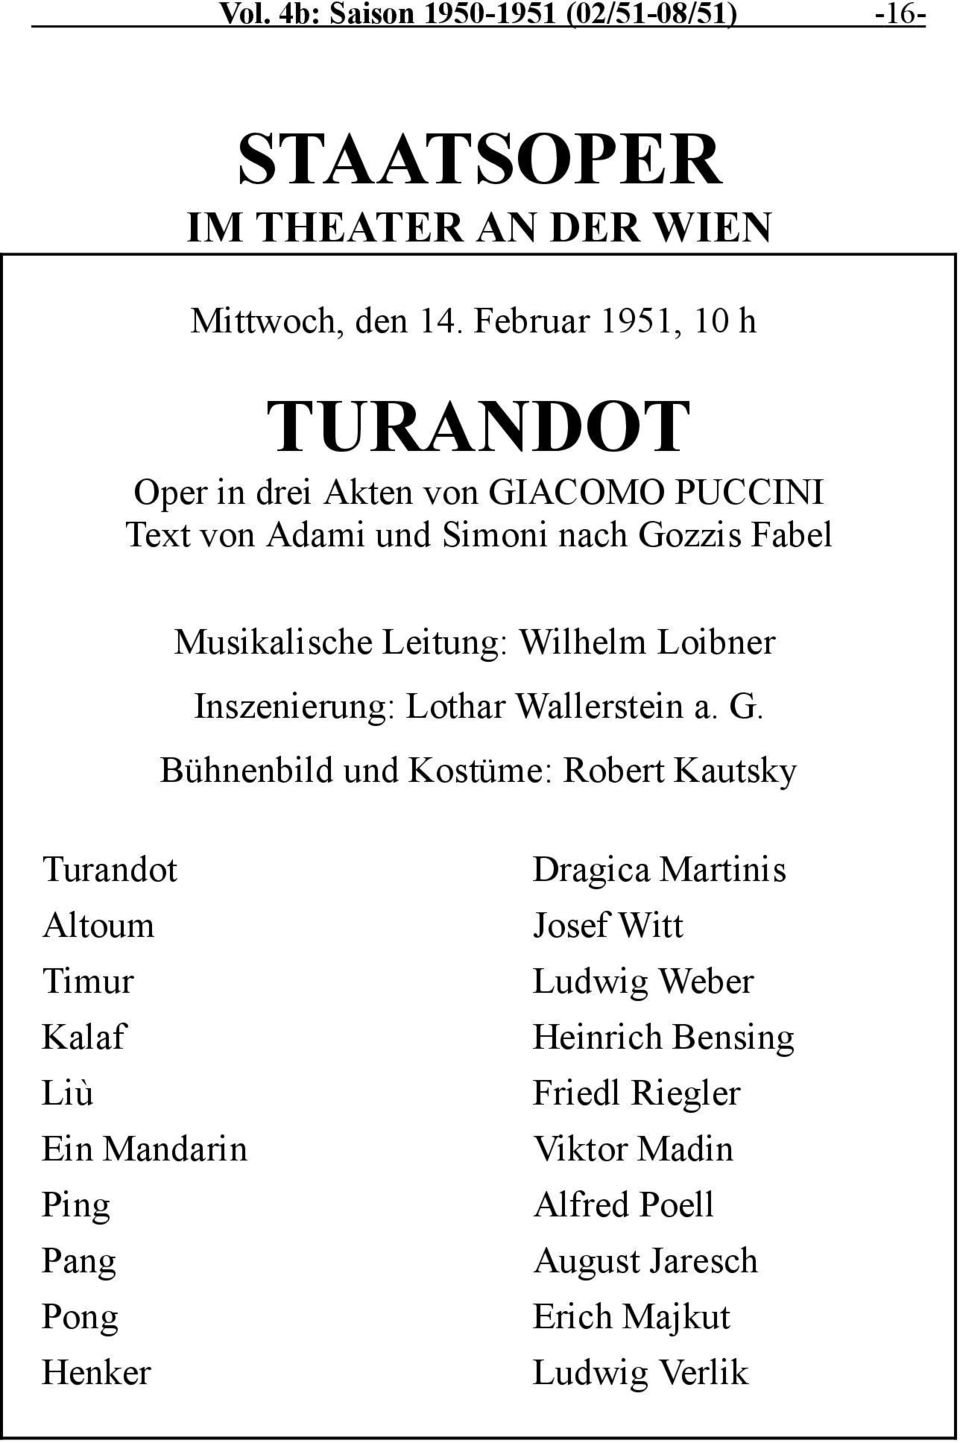 Wilhelm Loibner Inszenierung: Lothar Wallerstein a. G.